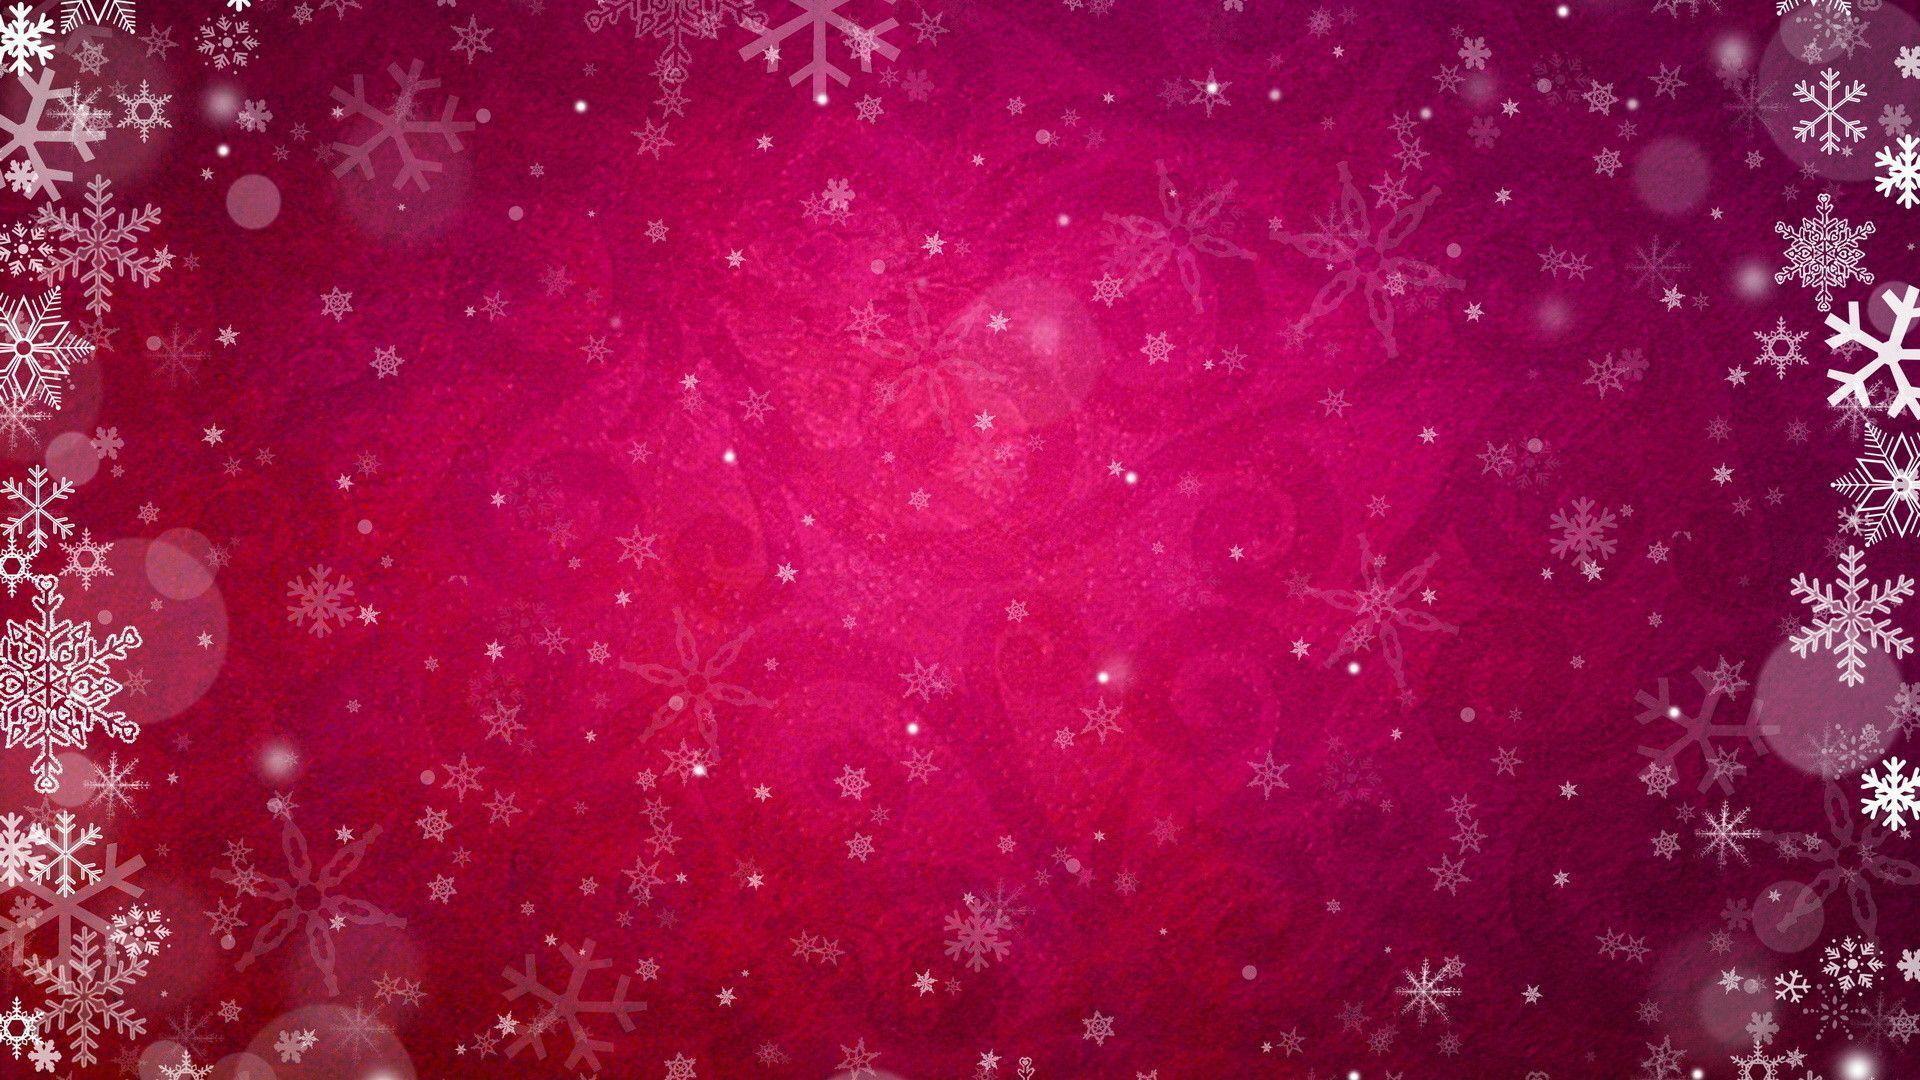 Pink Snowflake Wallpaper Free Download